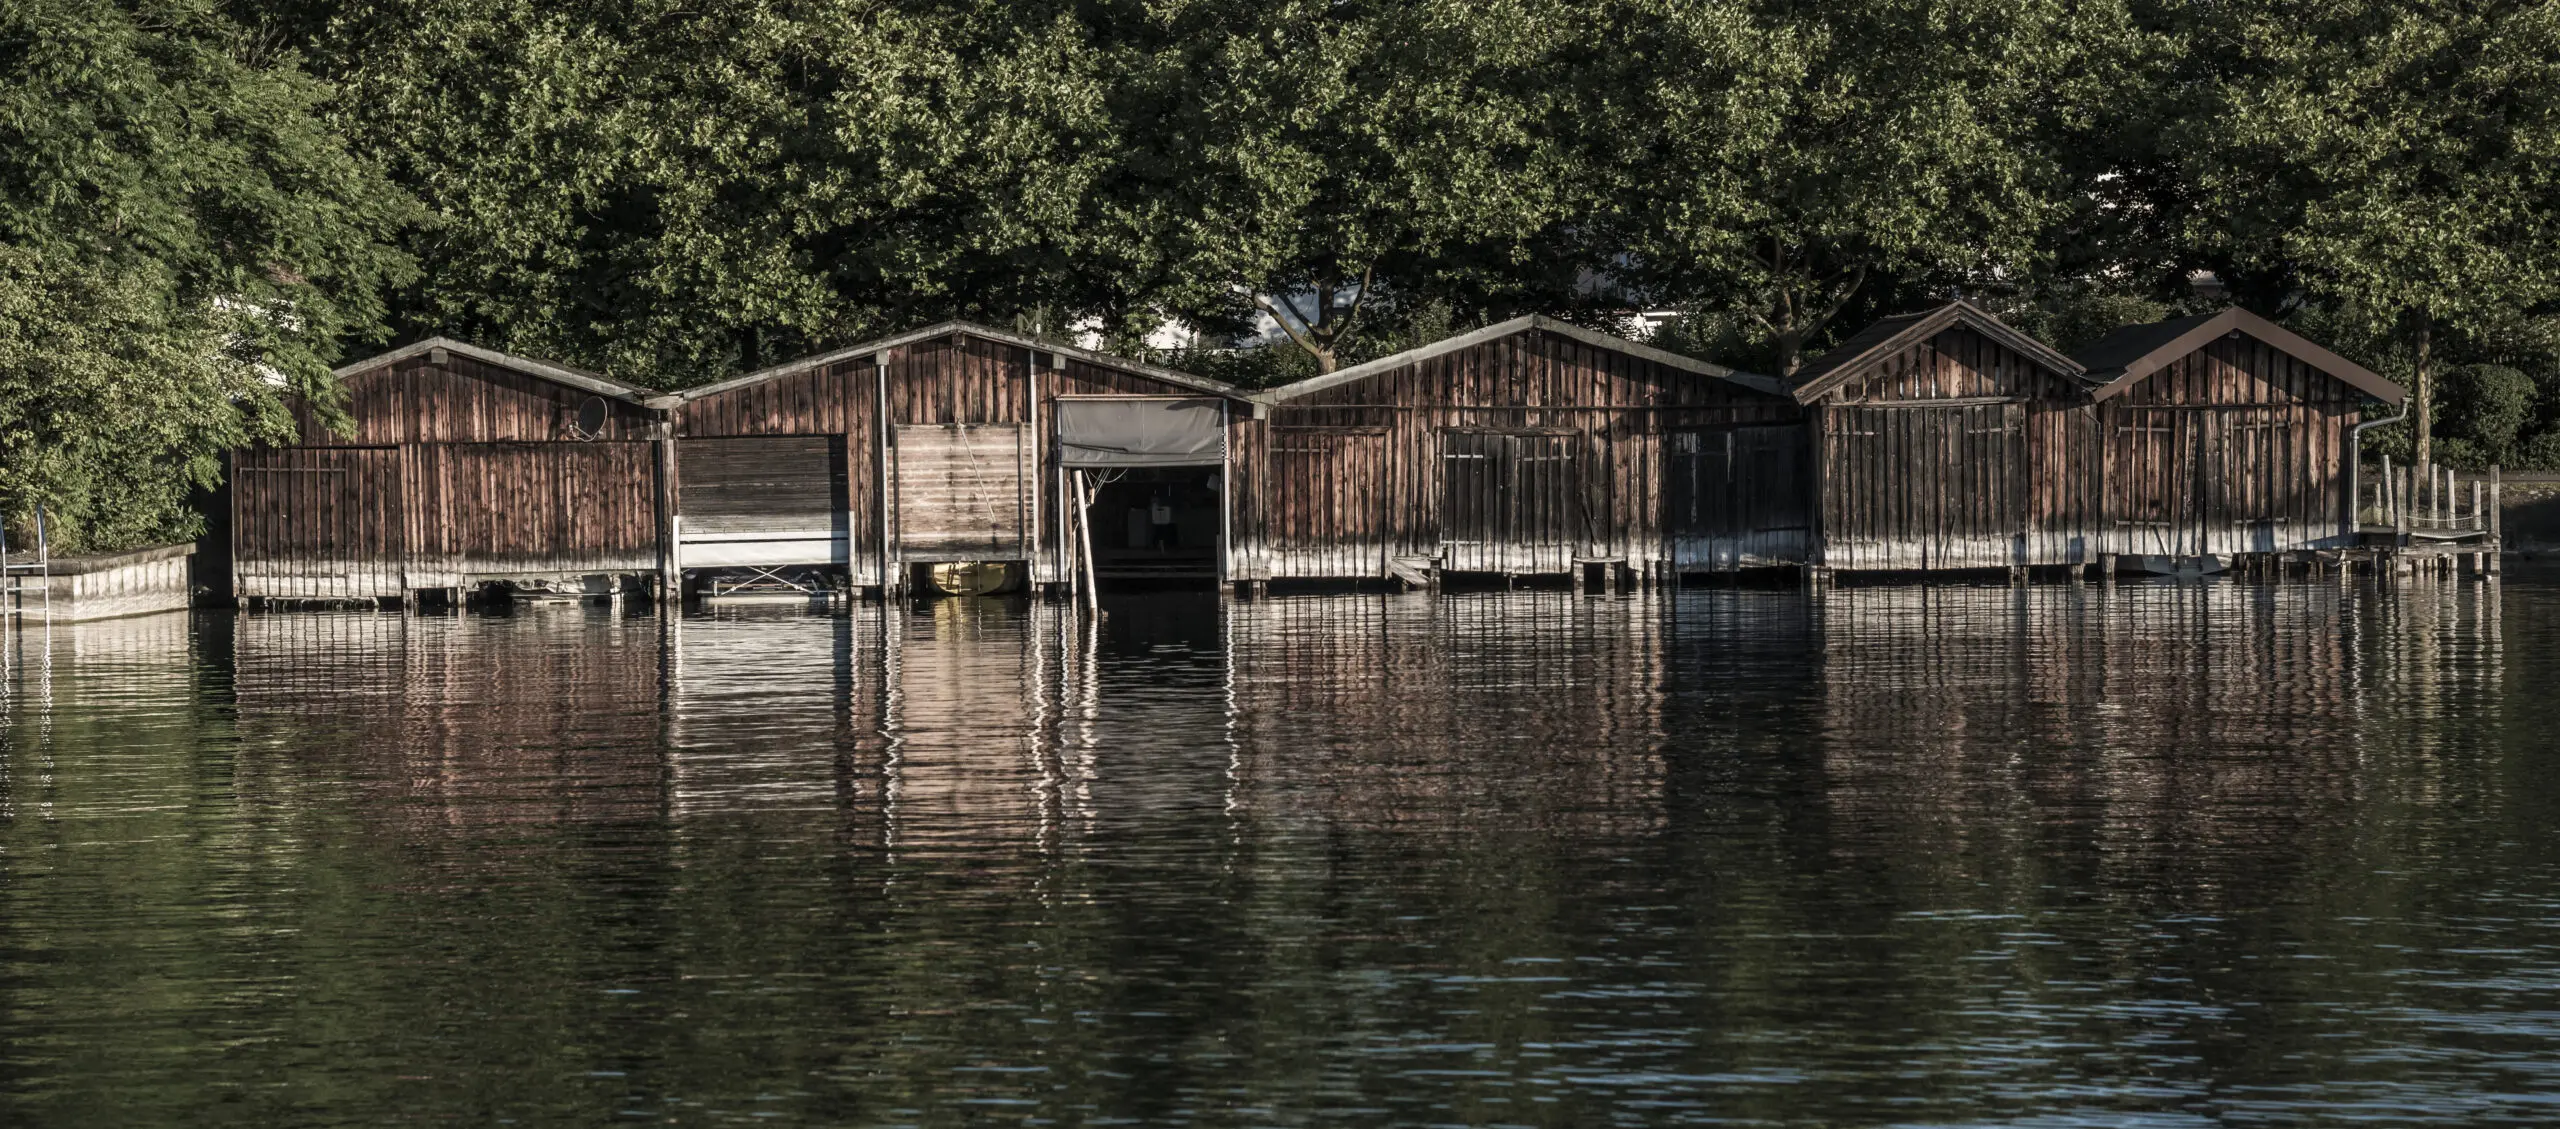 Wandbild (3649) Fischerhütten präsentiert: Wasser,Details und Strukturen,Landschaften,Sommer,Gewässer,Seen,Wasserspiegelungen